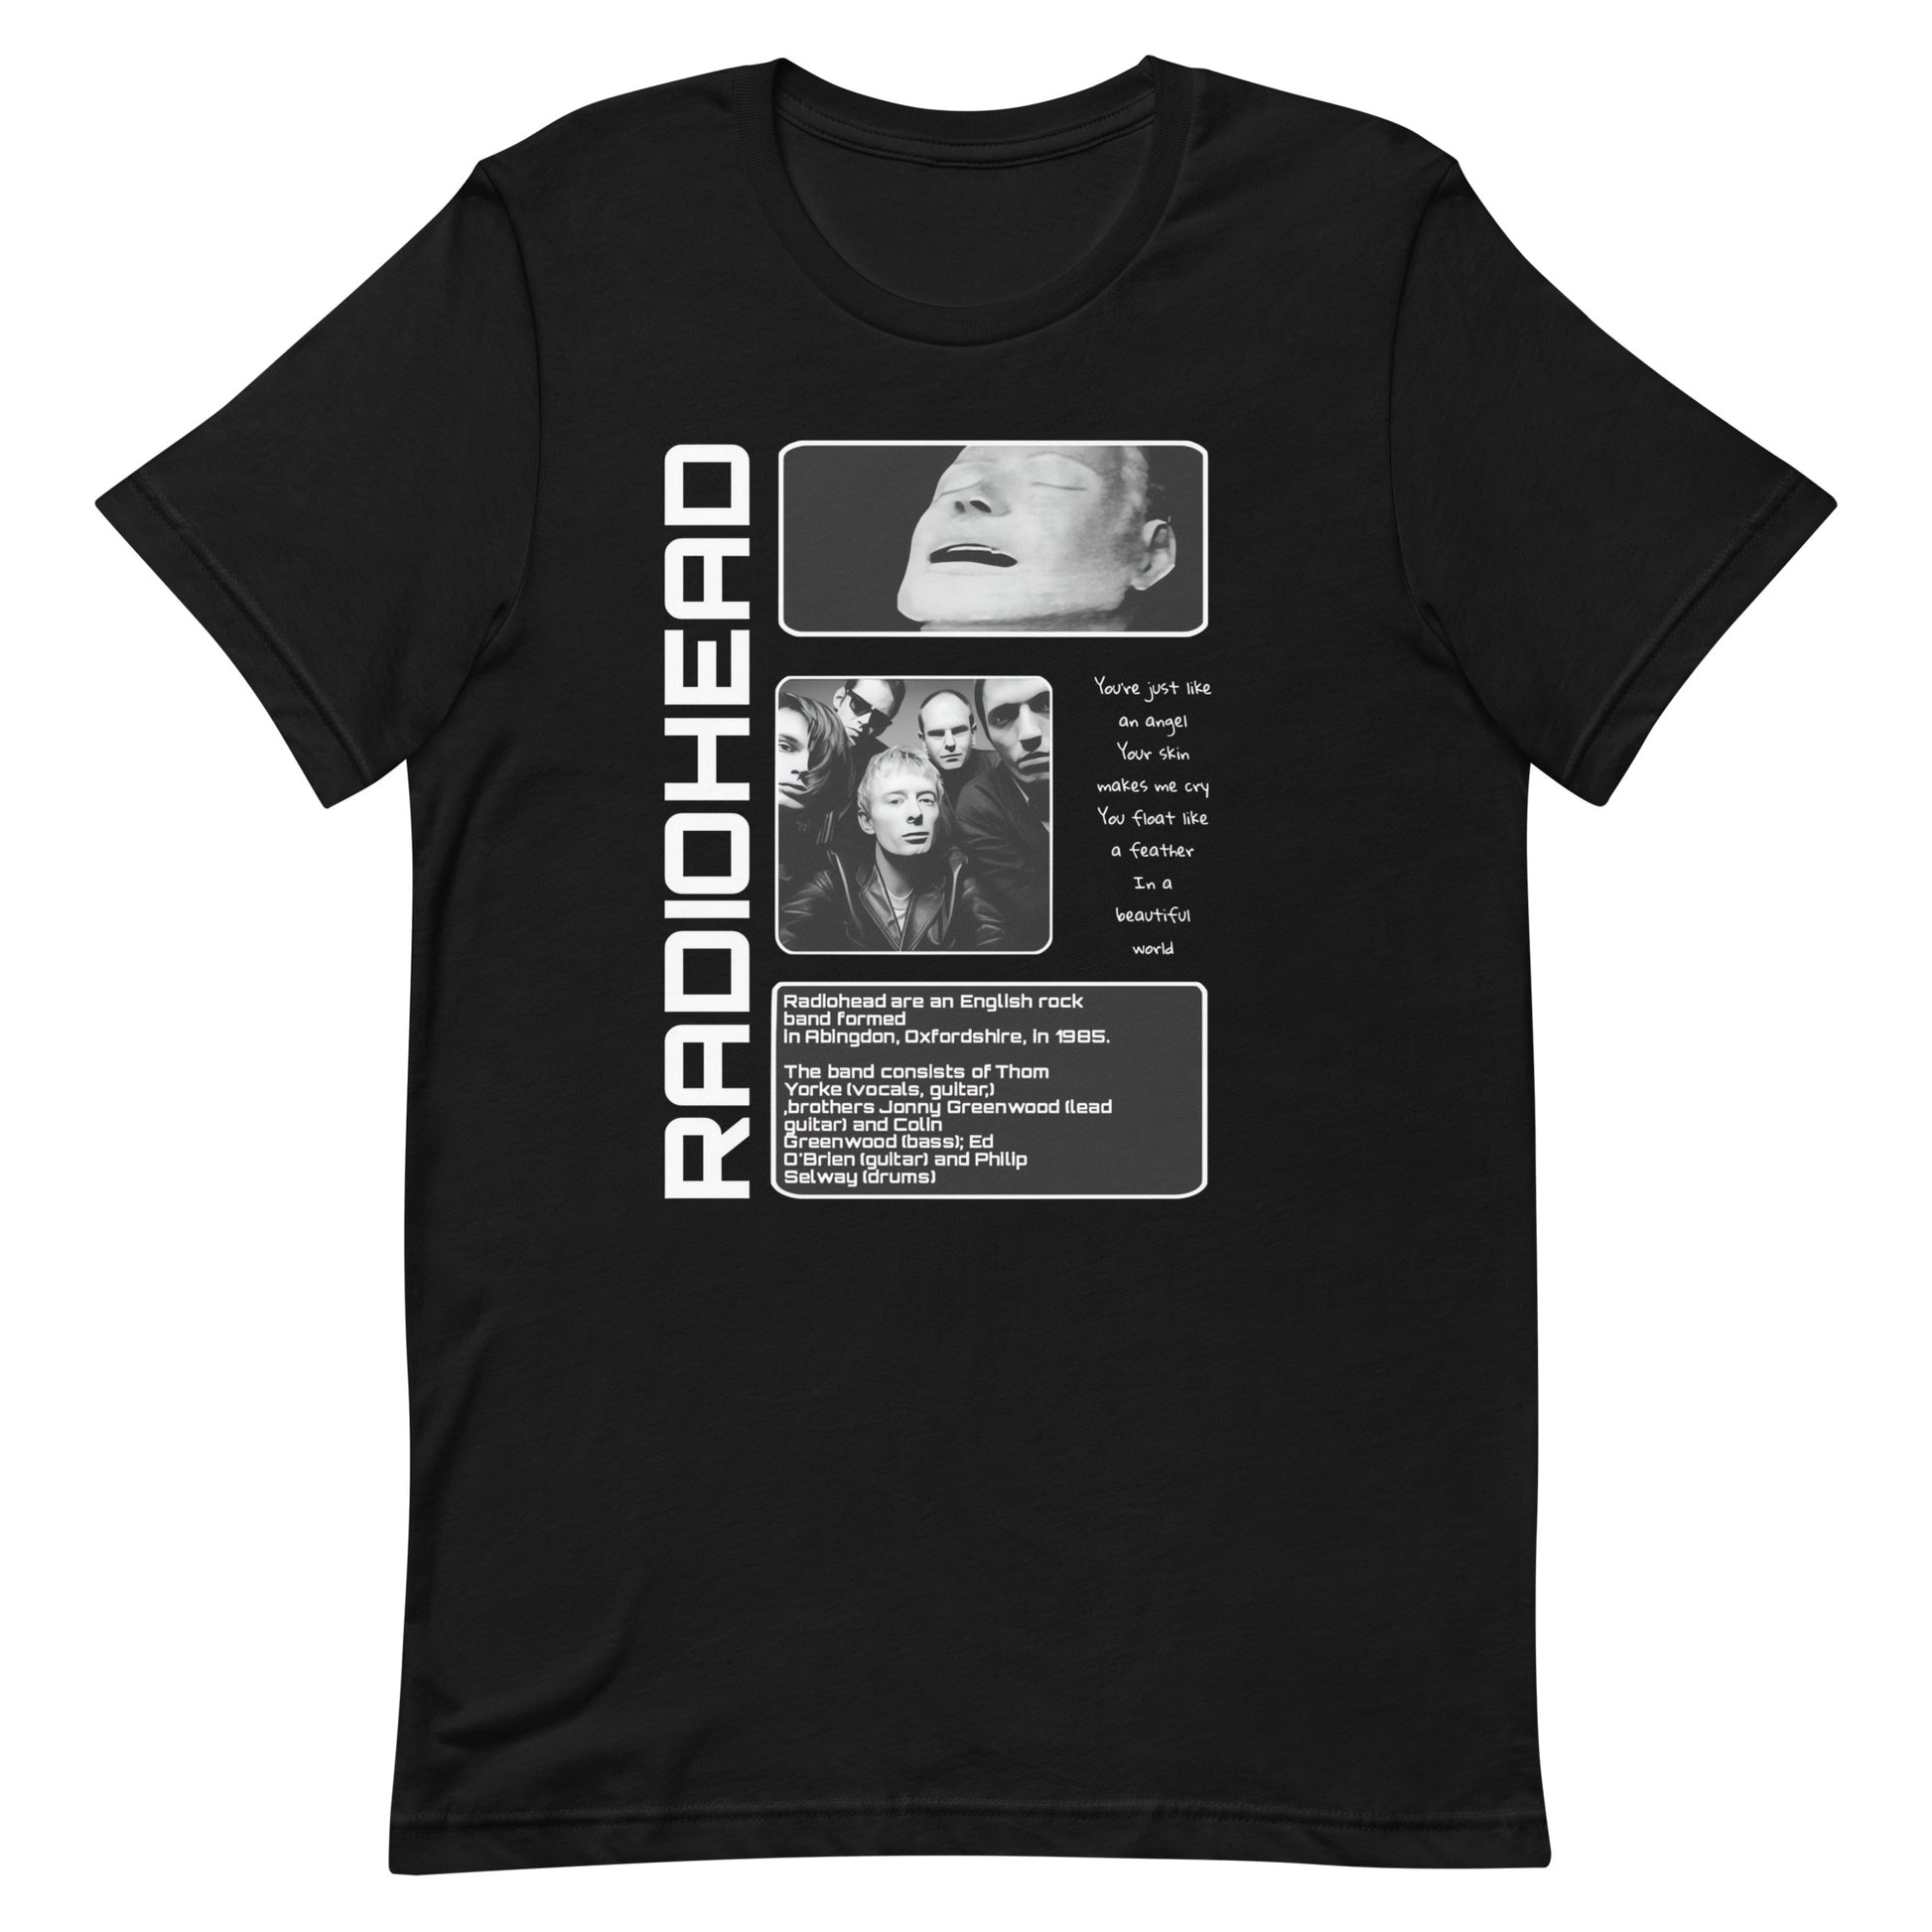 ¡Compra el mejor merchandising en Superstar! Encuentra diseños únicos y de alta calidad en camisetas únicas, Camiseta RadioHead History\